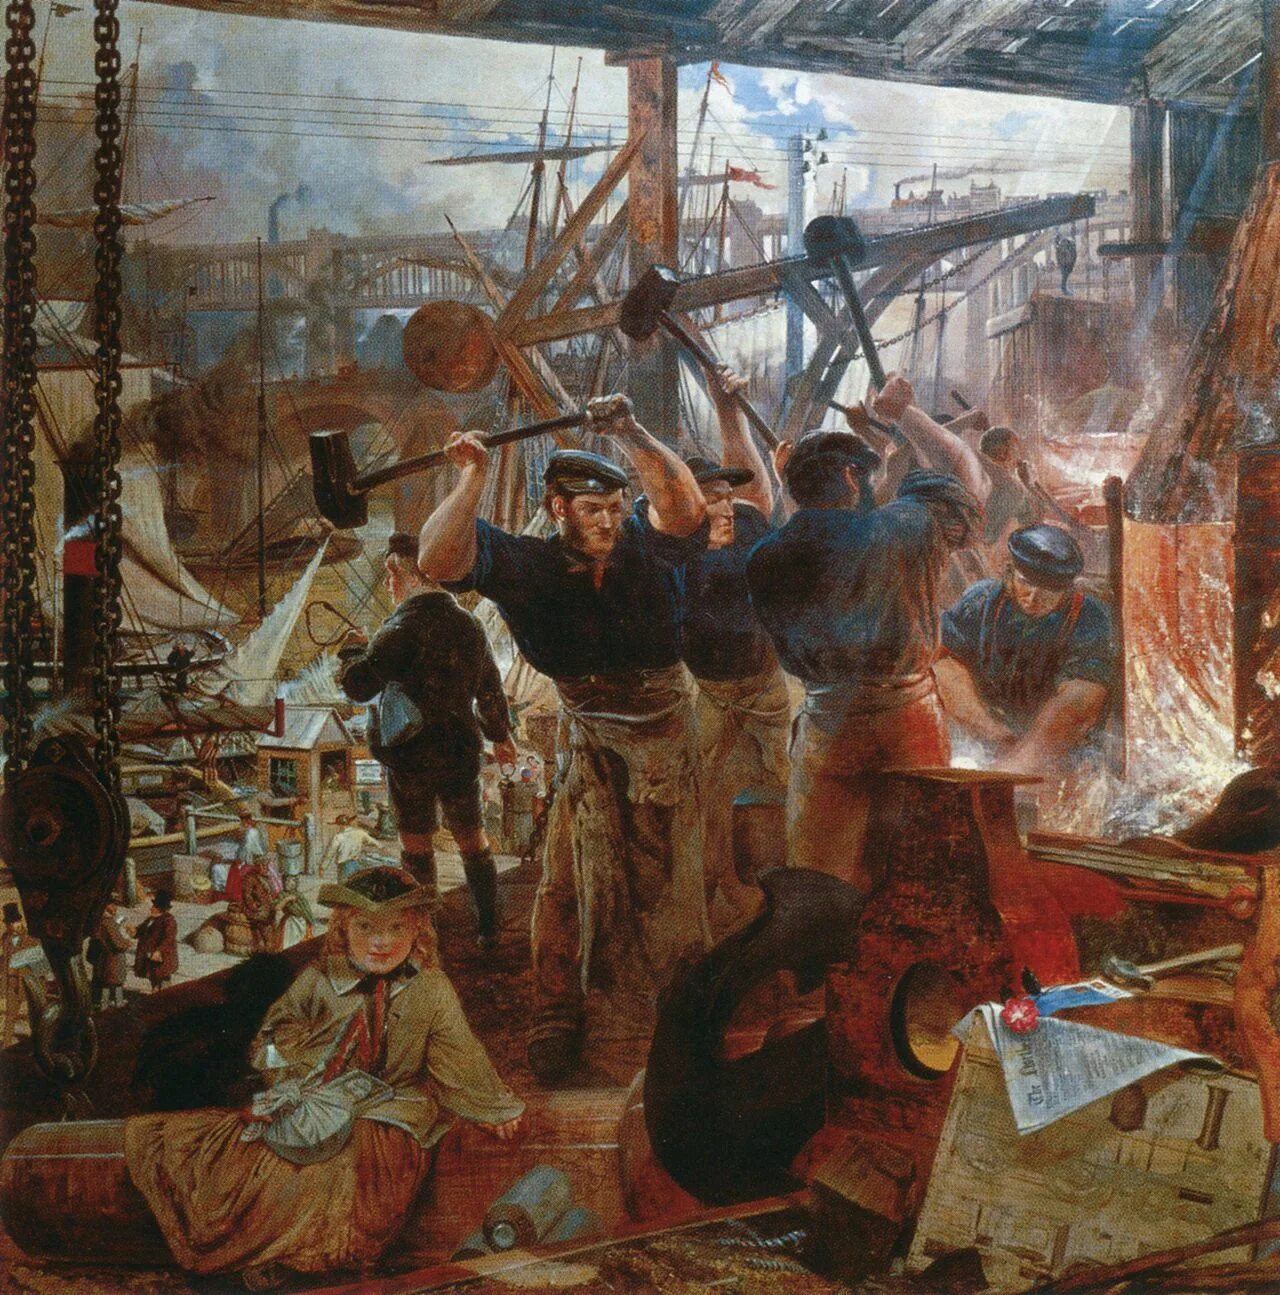 Industrial society. Уильям Белл Скотт «железо и уголь». Промышленная революция 18-19 веков.